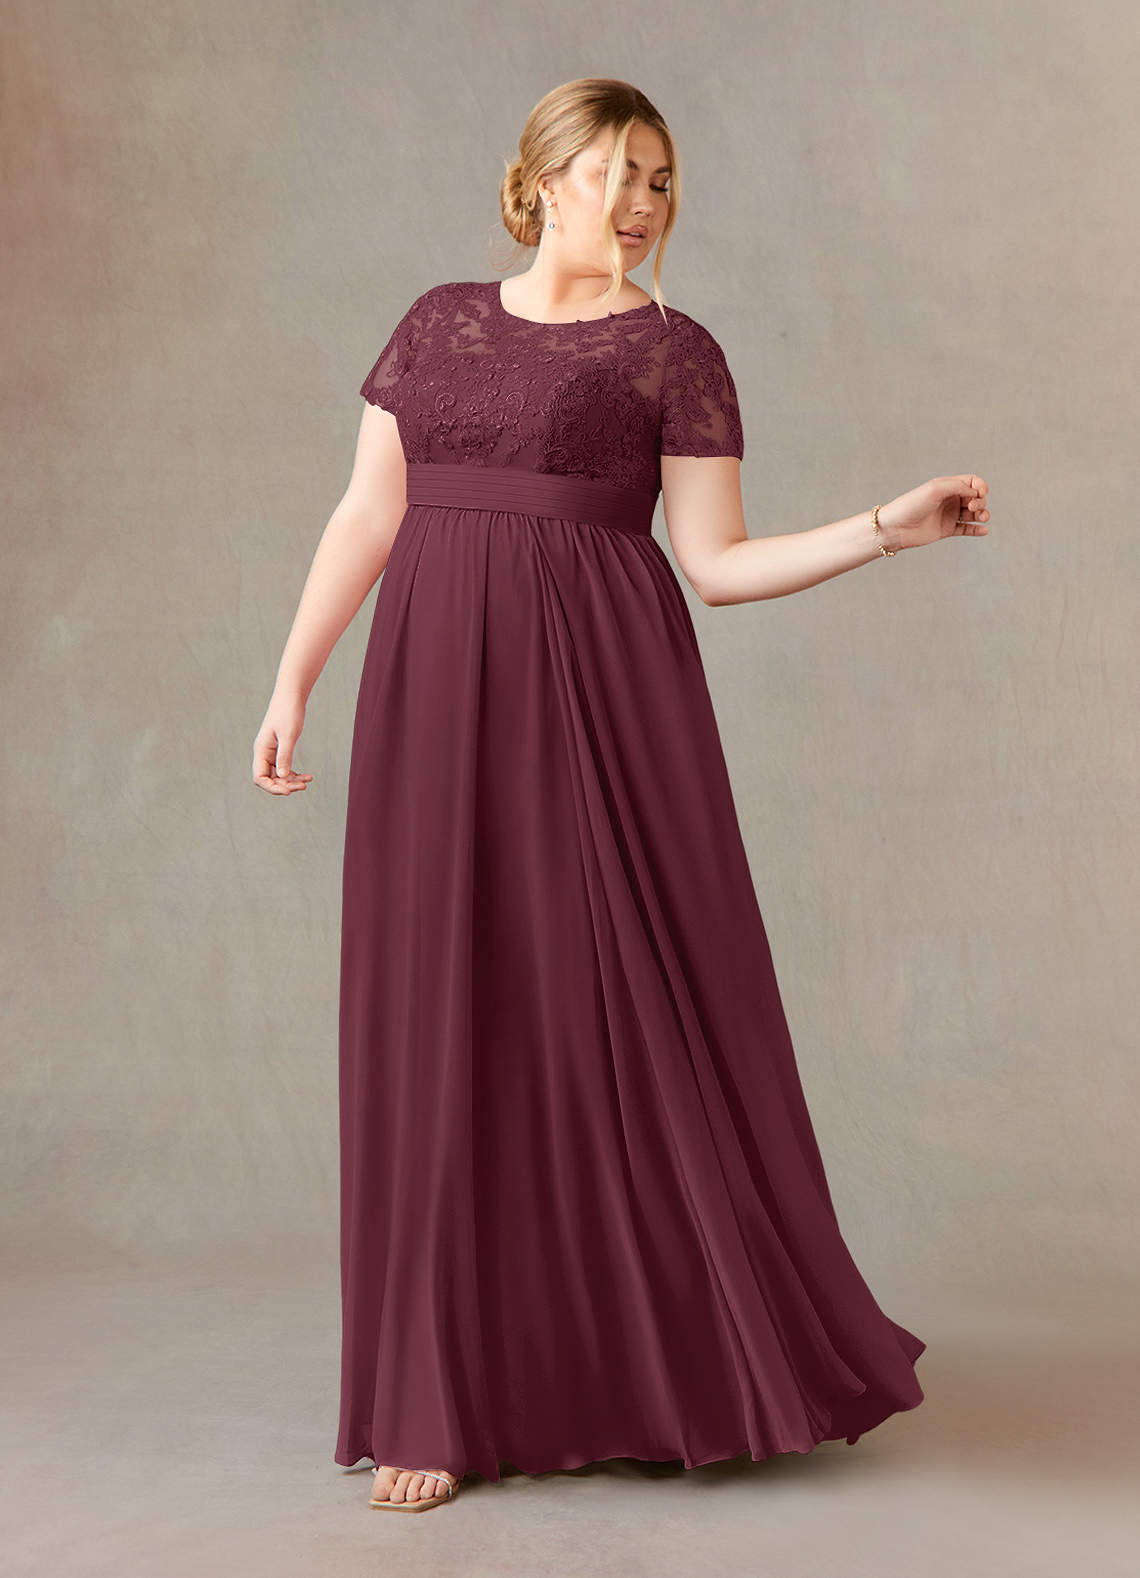 Cabernet Azazie Annette A-Line Lace Chiffon Floor-Length Dress | Azazie